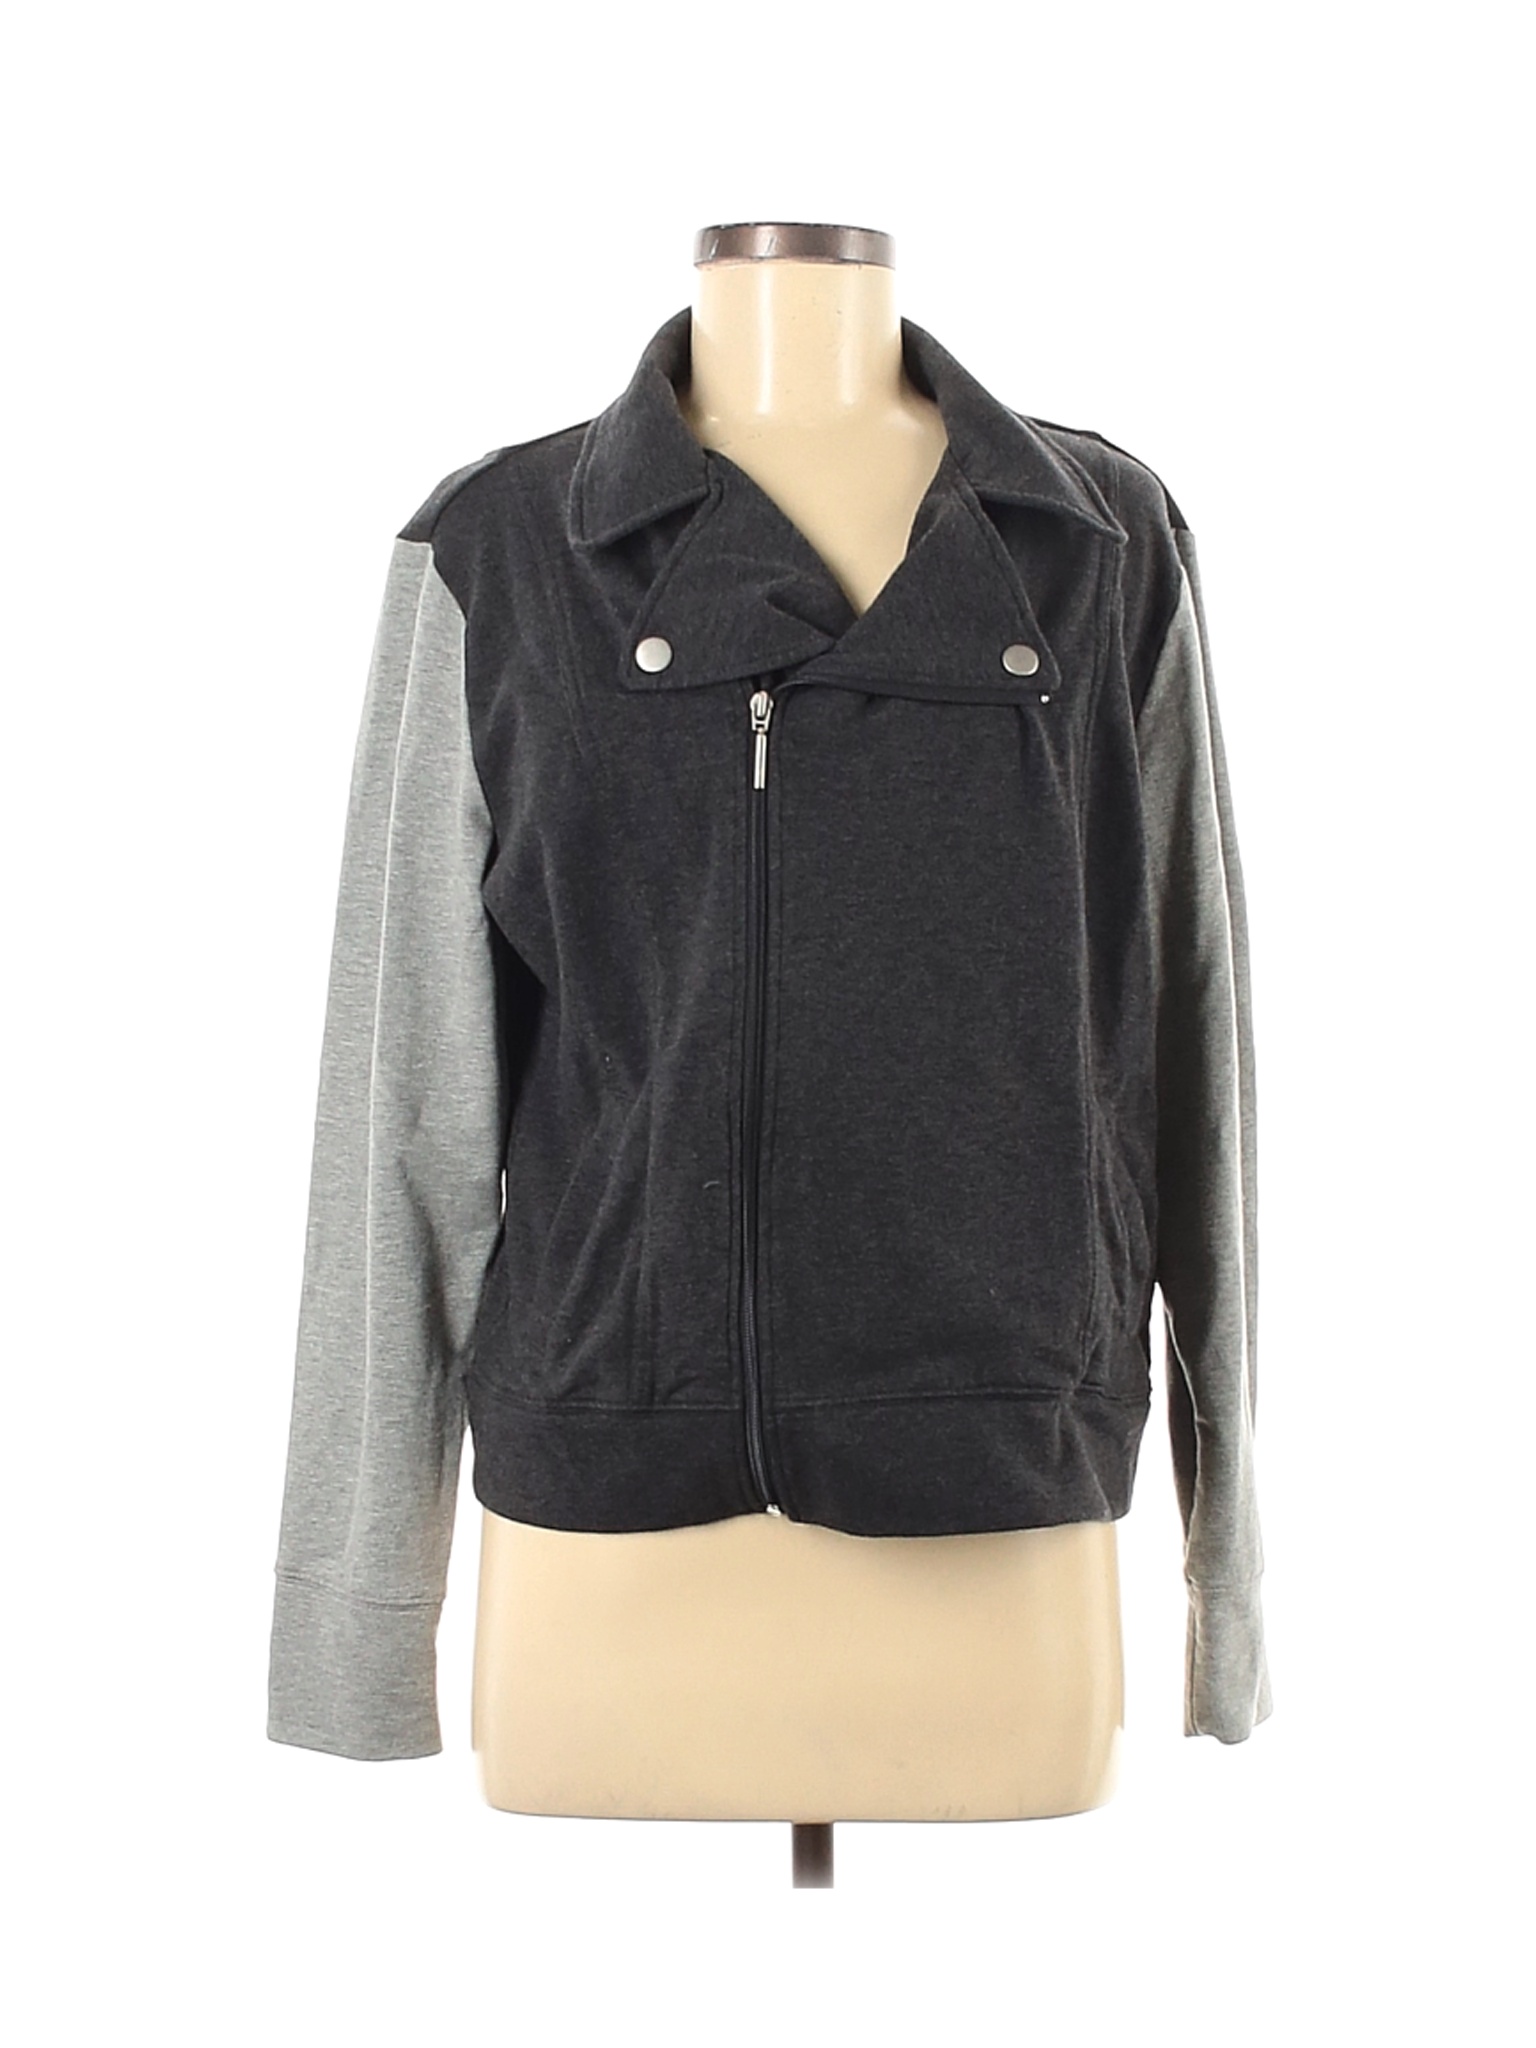 New York & Company Women Gray Jacket L | eBay